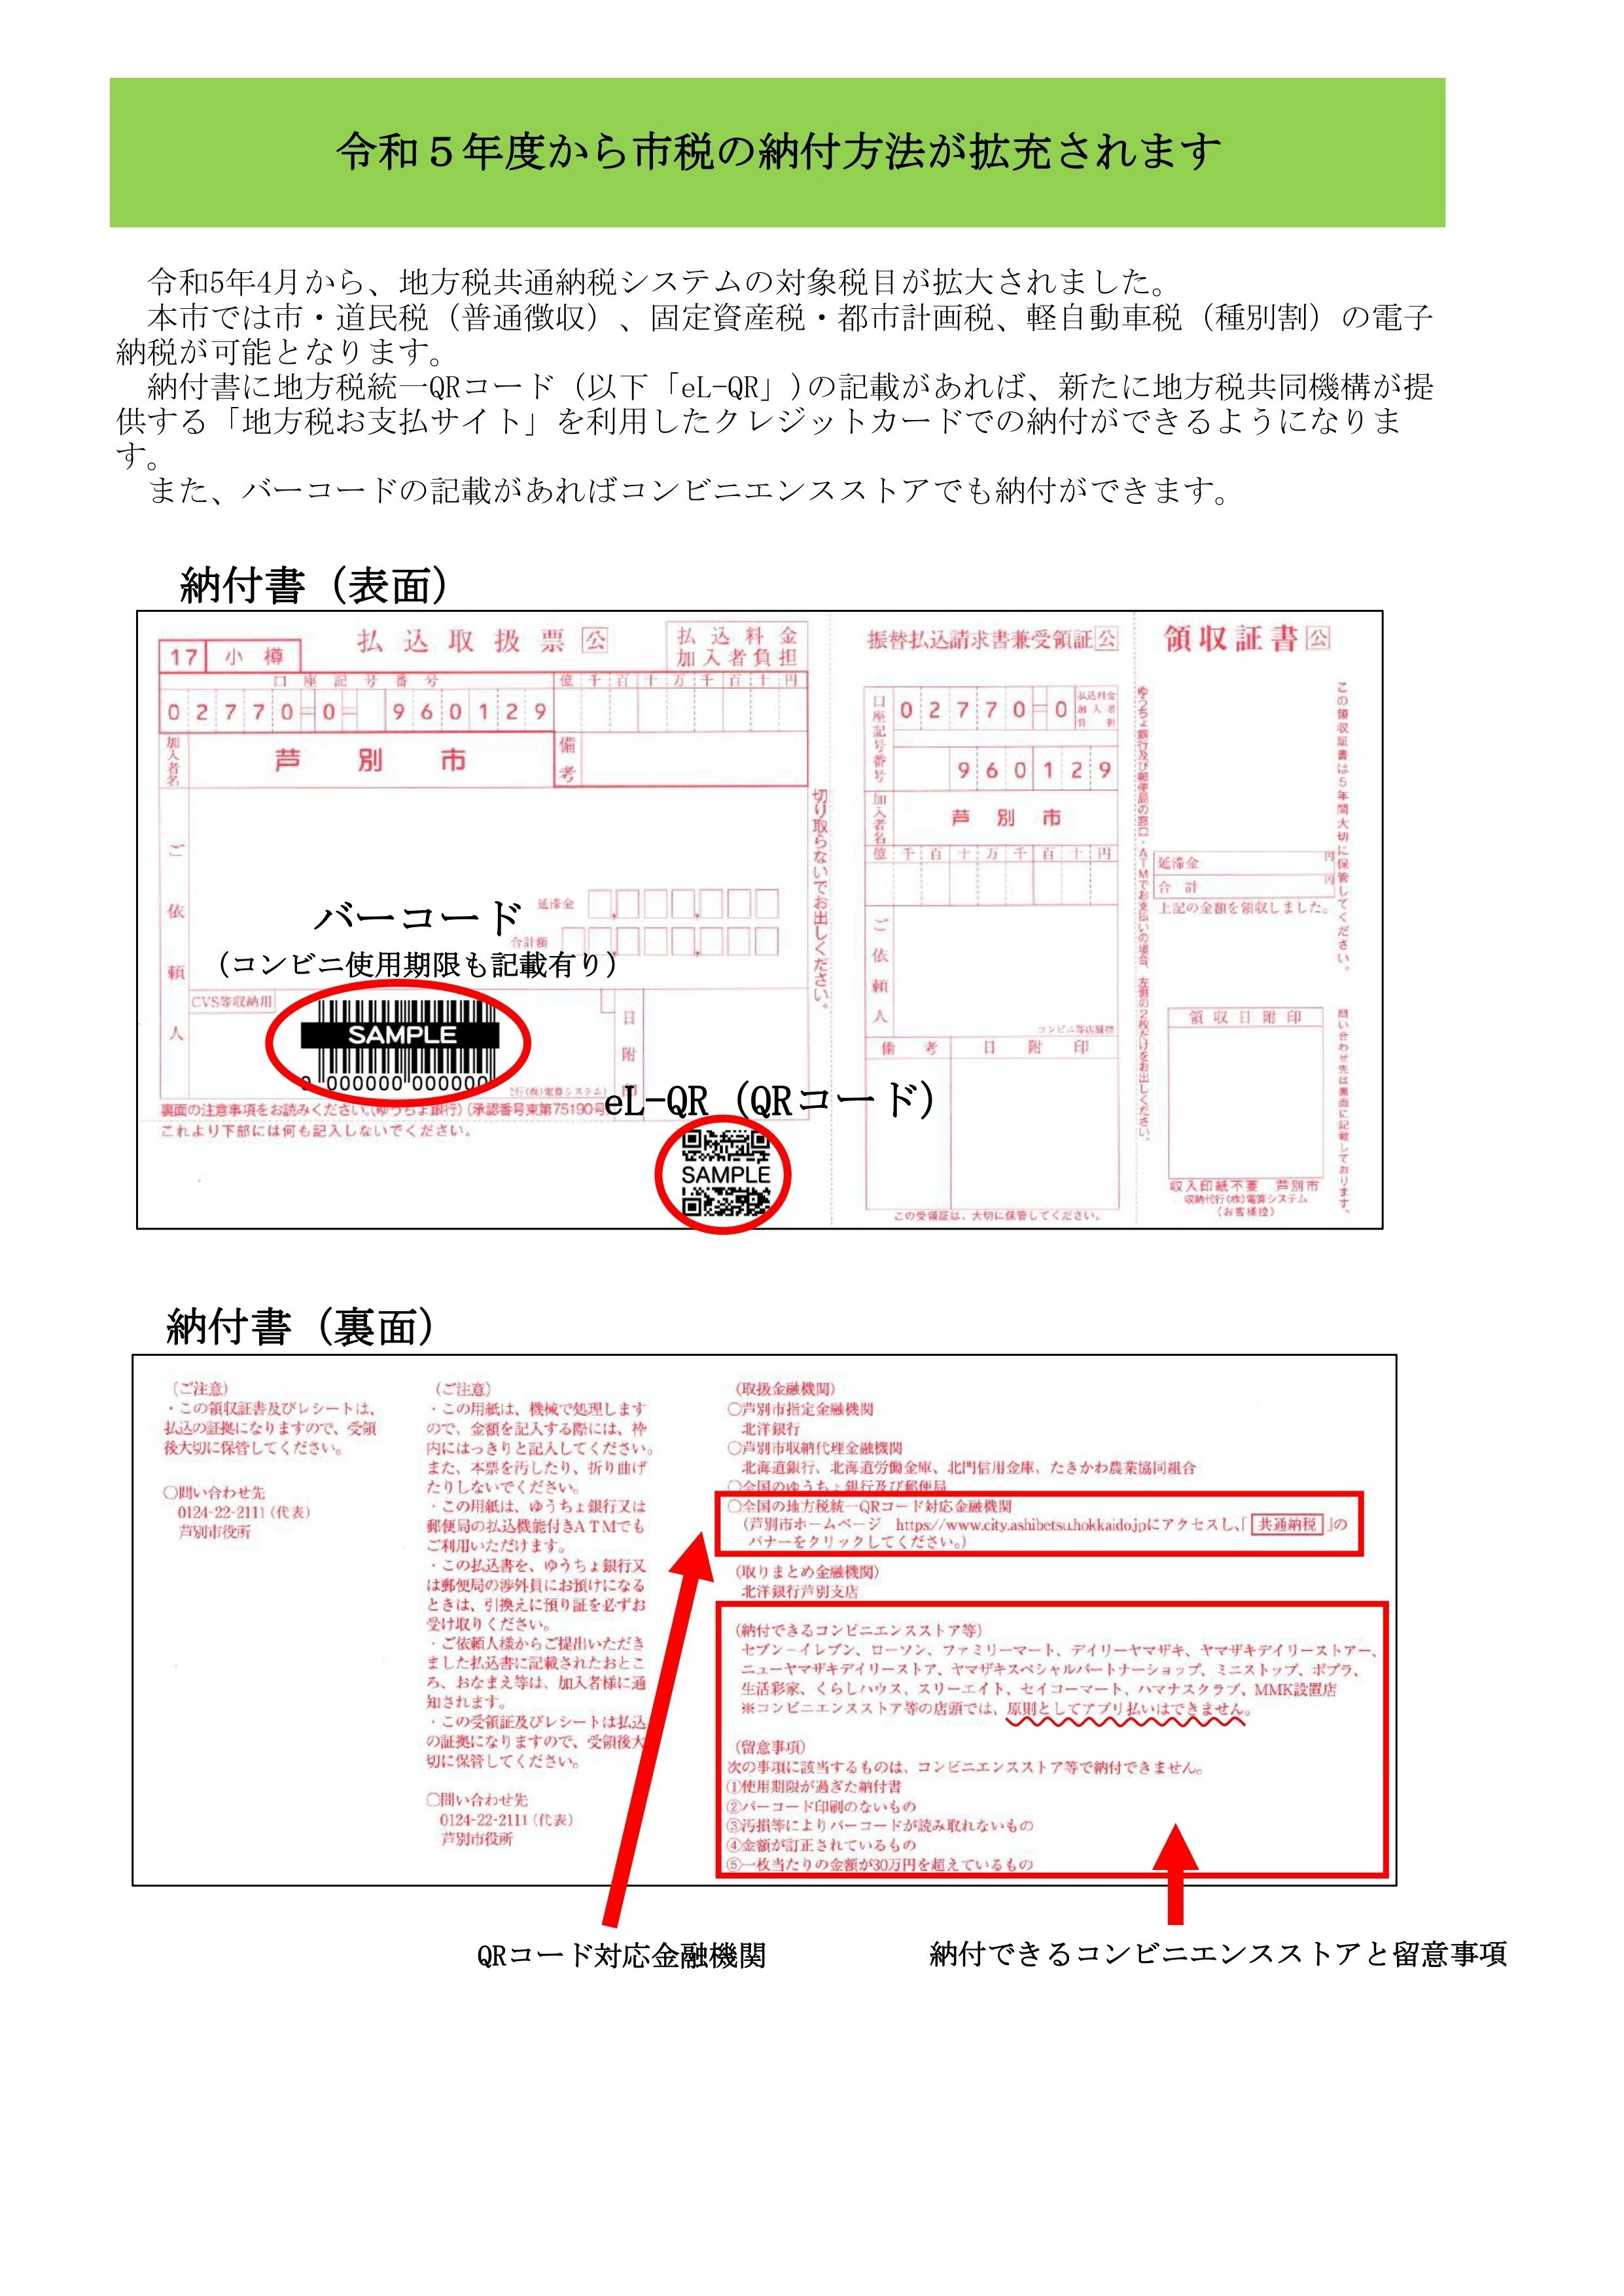 共通納税・コンビニ収納広報・HP用1_page-0001 (1).jpg